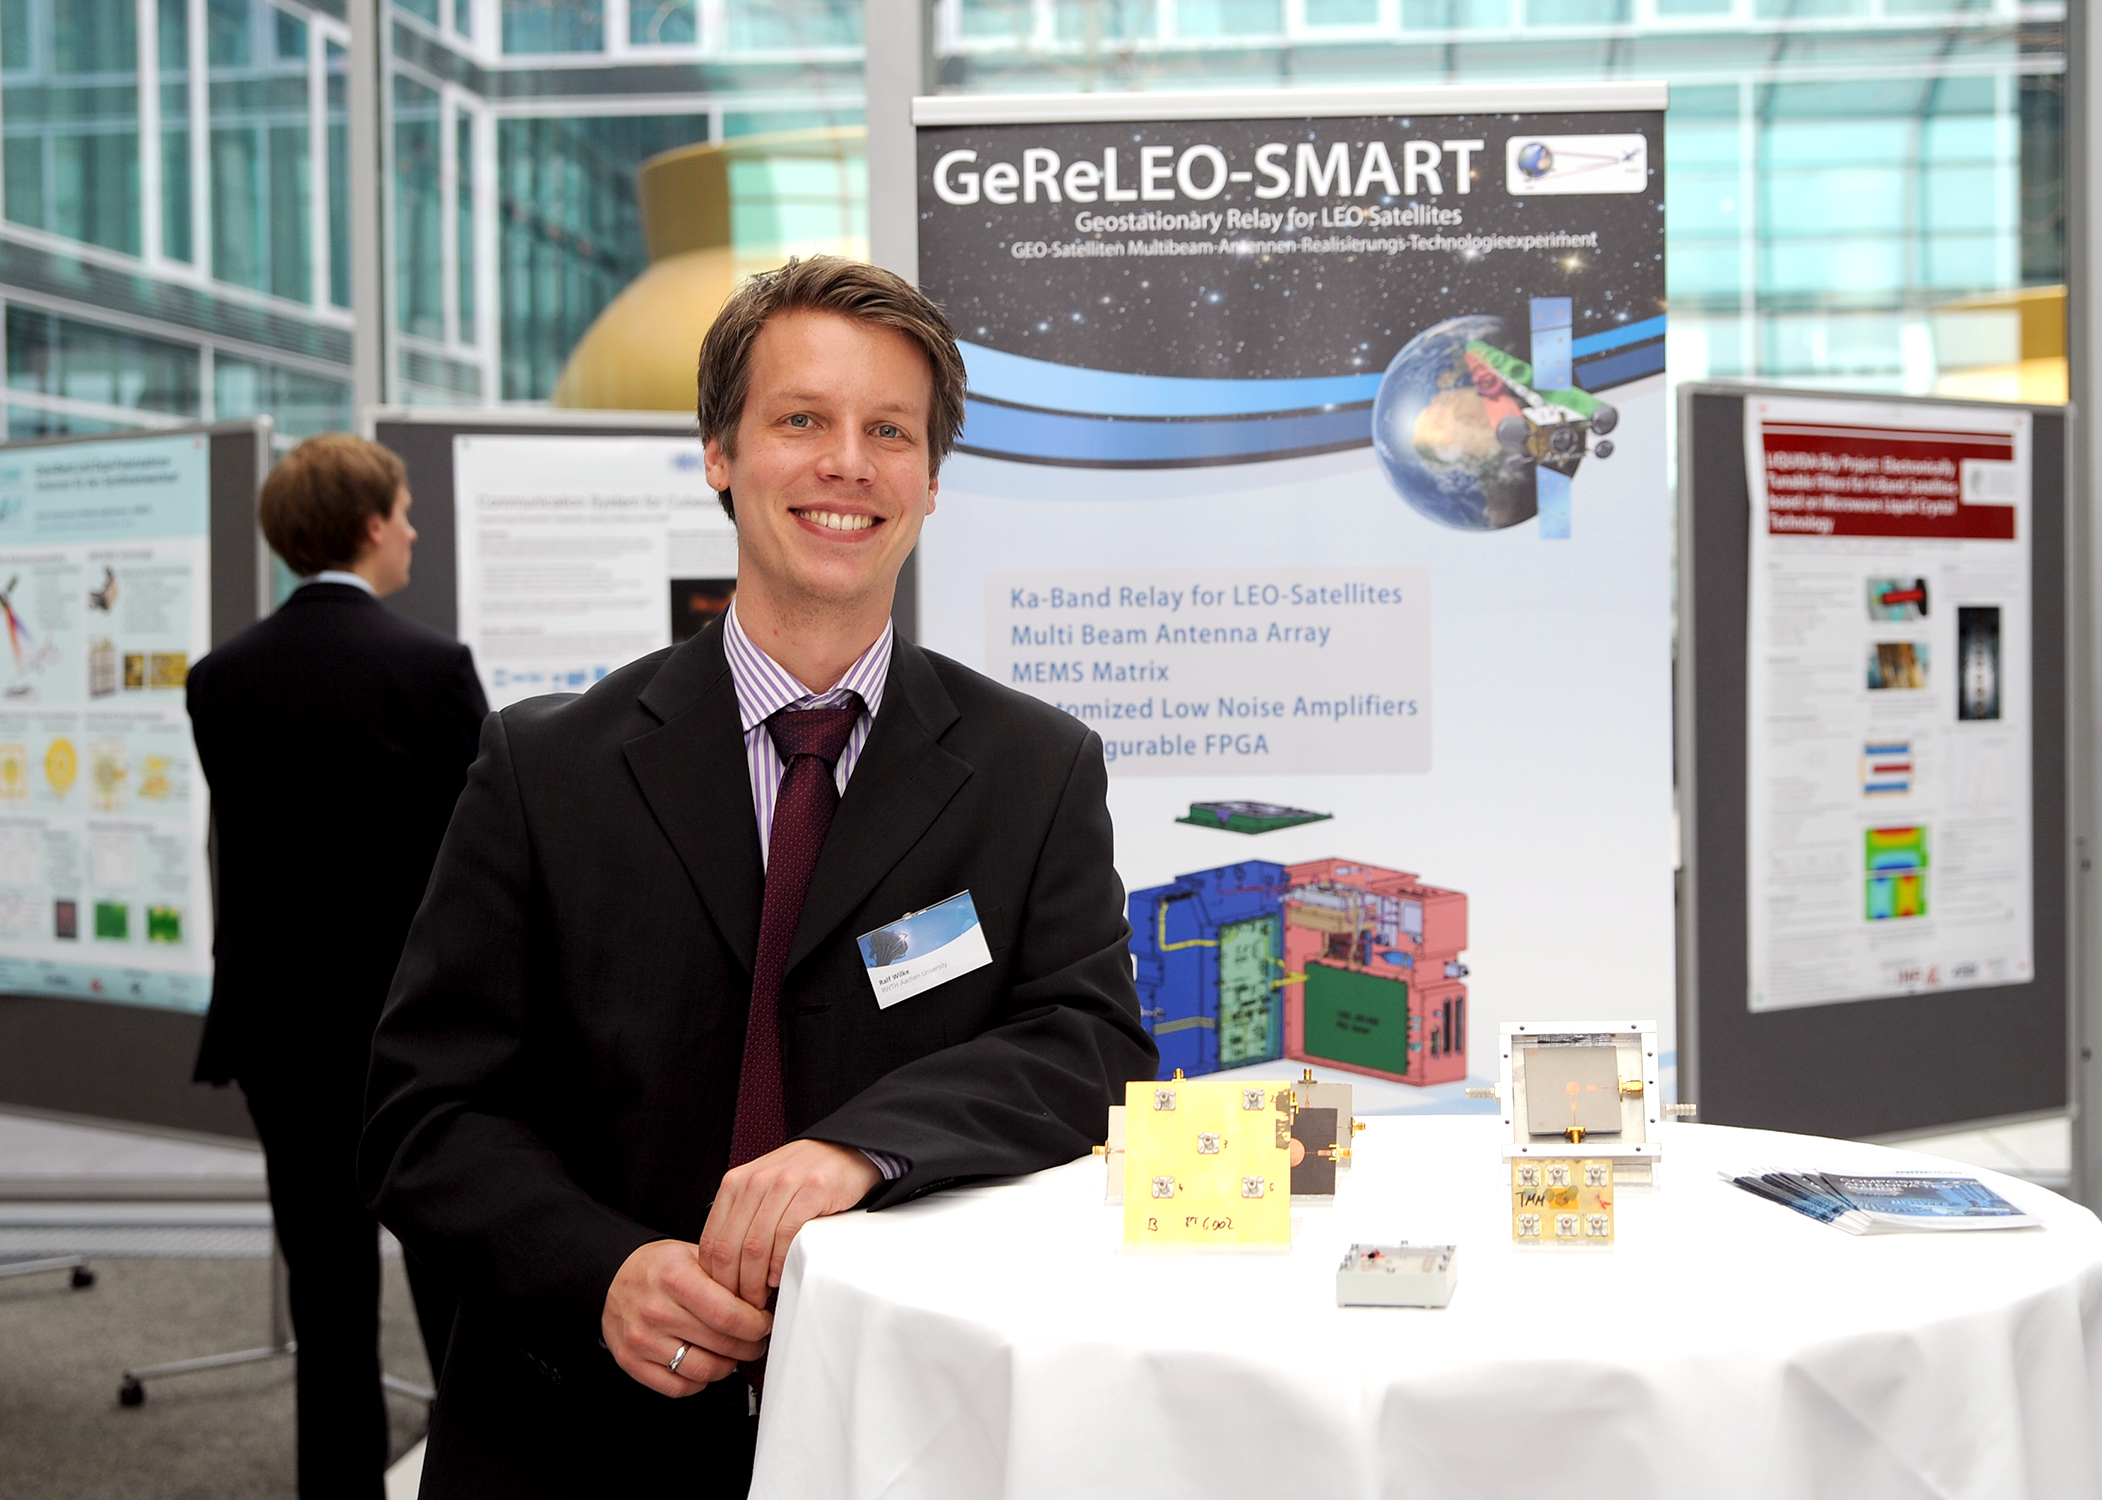 Präsentation von GeReLEO-SMART in Bonn beim DLR